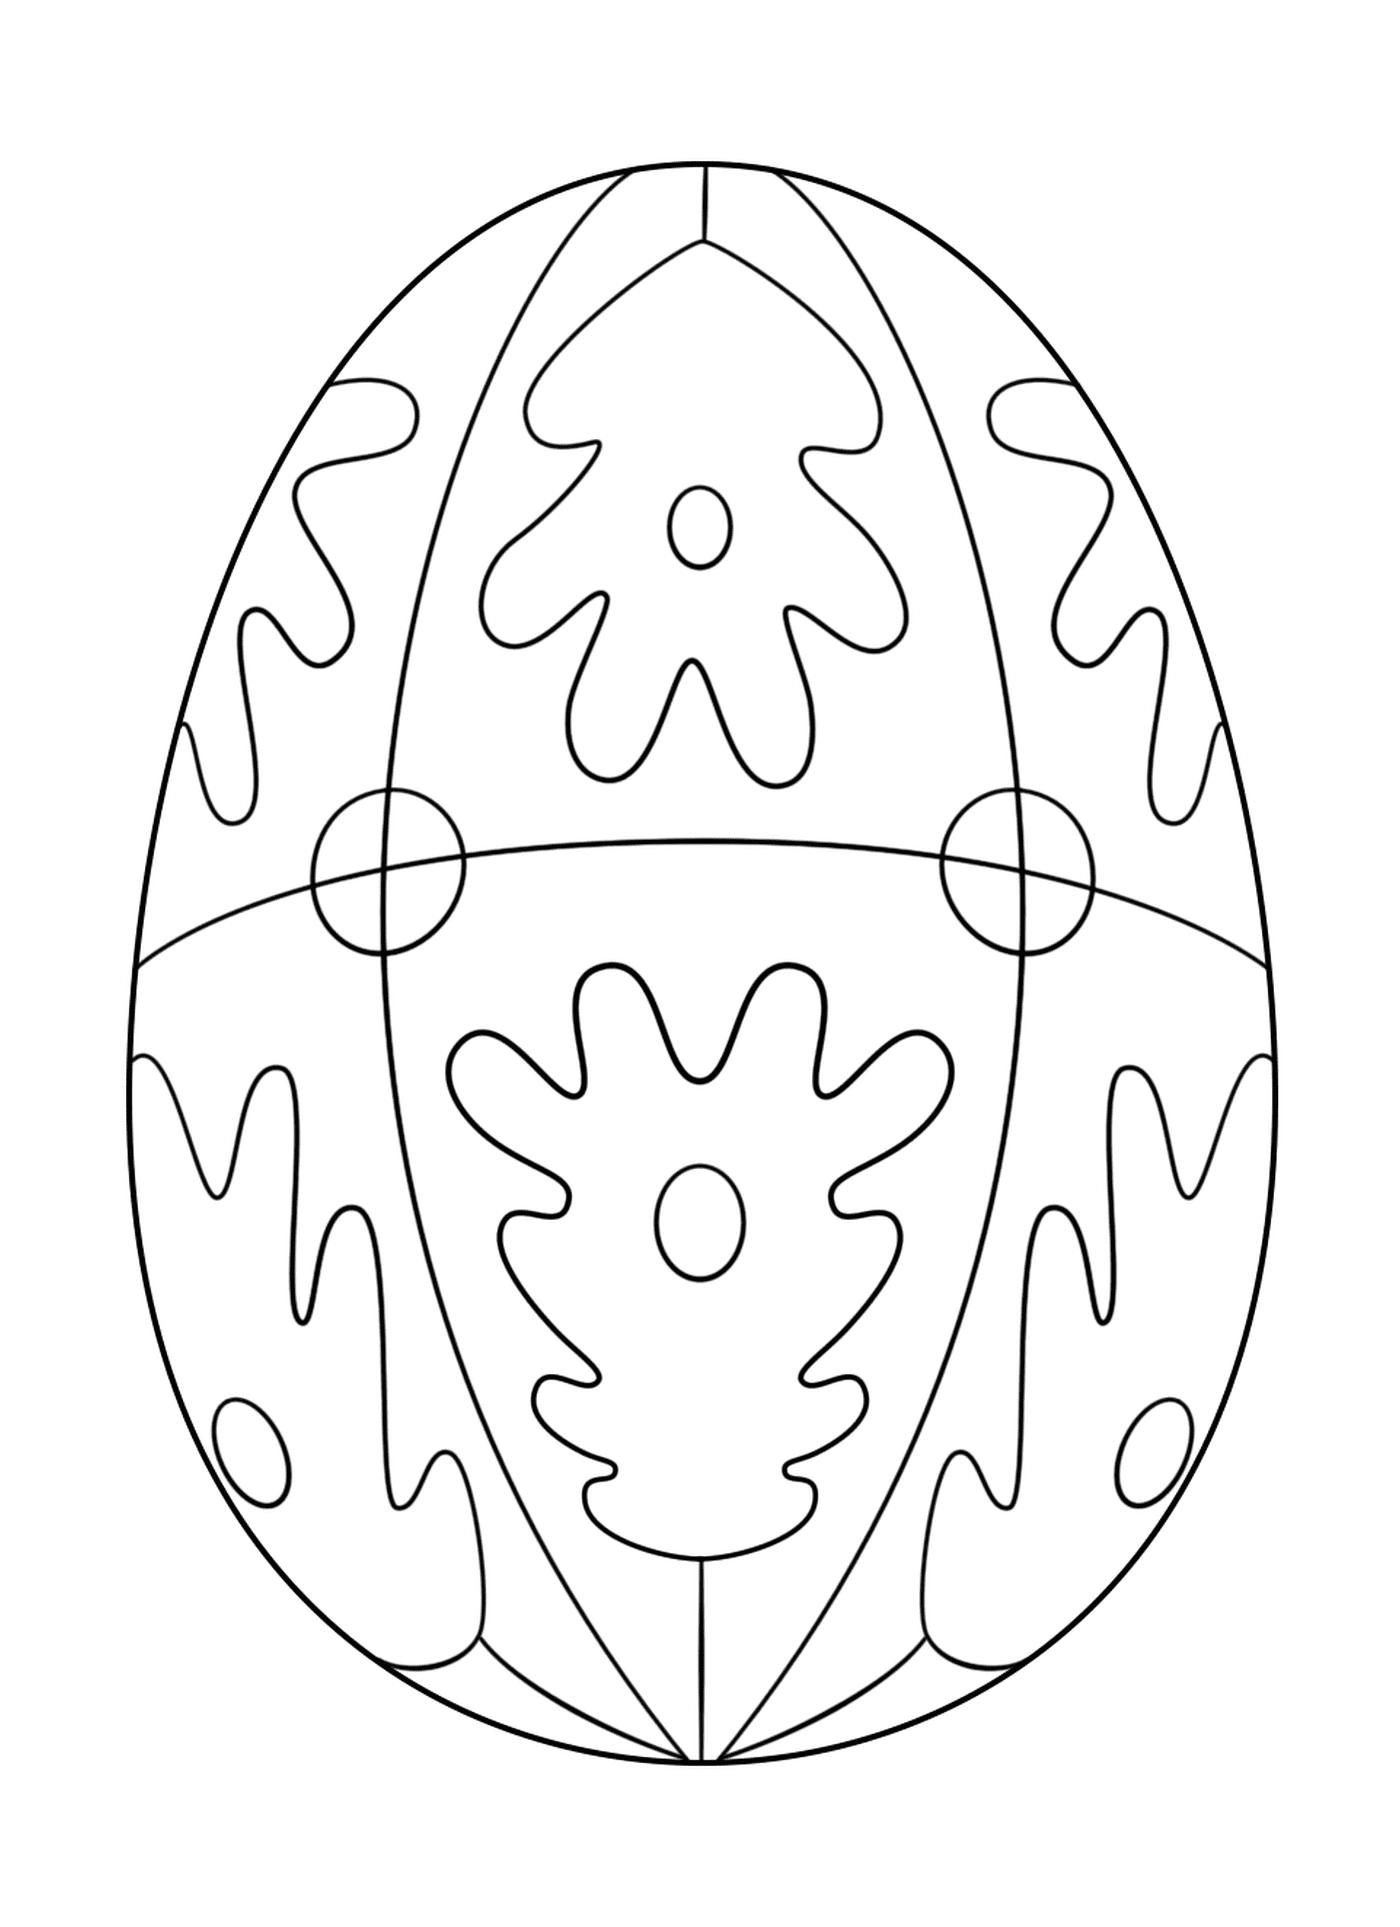   Oeuf de Pâques avec motif géométrique 